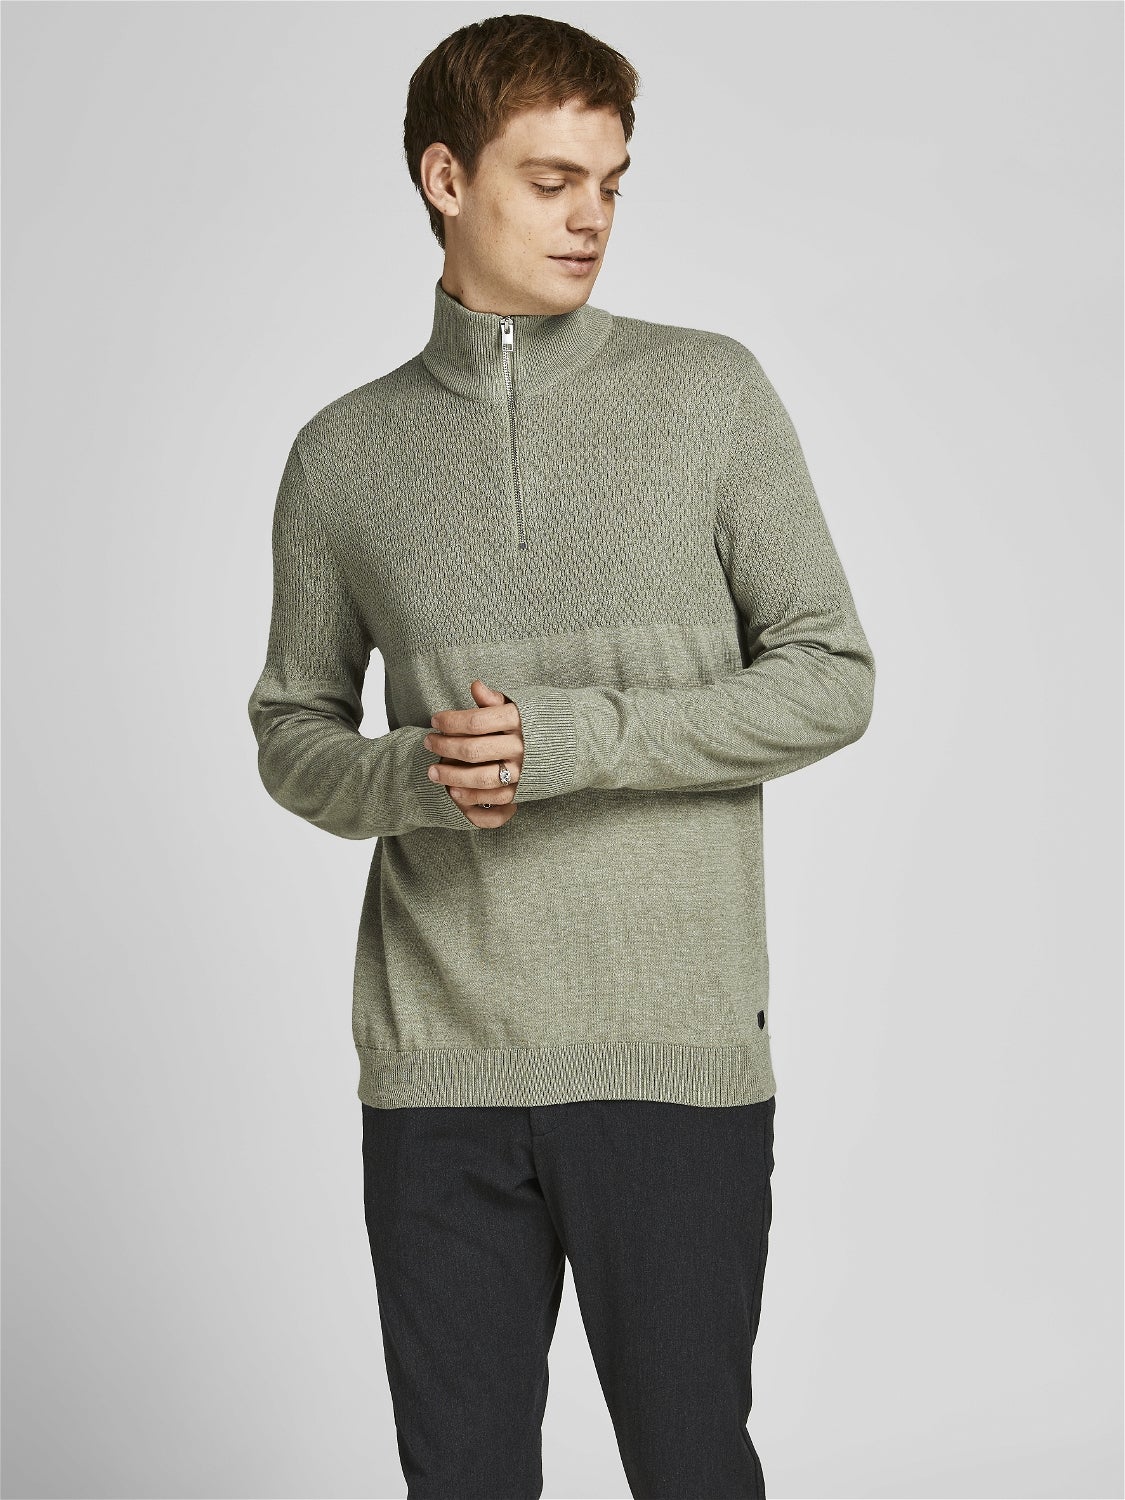 Mens Clothing Sweaters and knitwear Zipped sweaters for Men Grey Jack & Jones Originals 1/4 Zip Fleece in Grey 